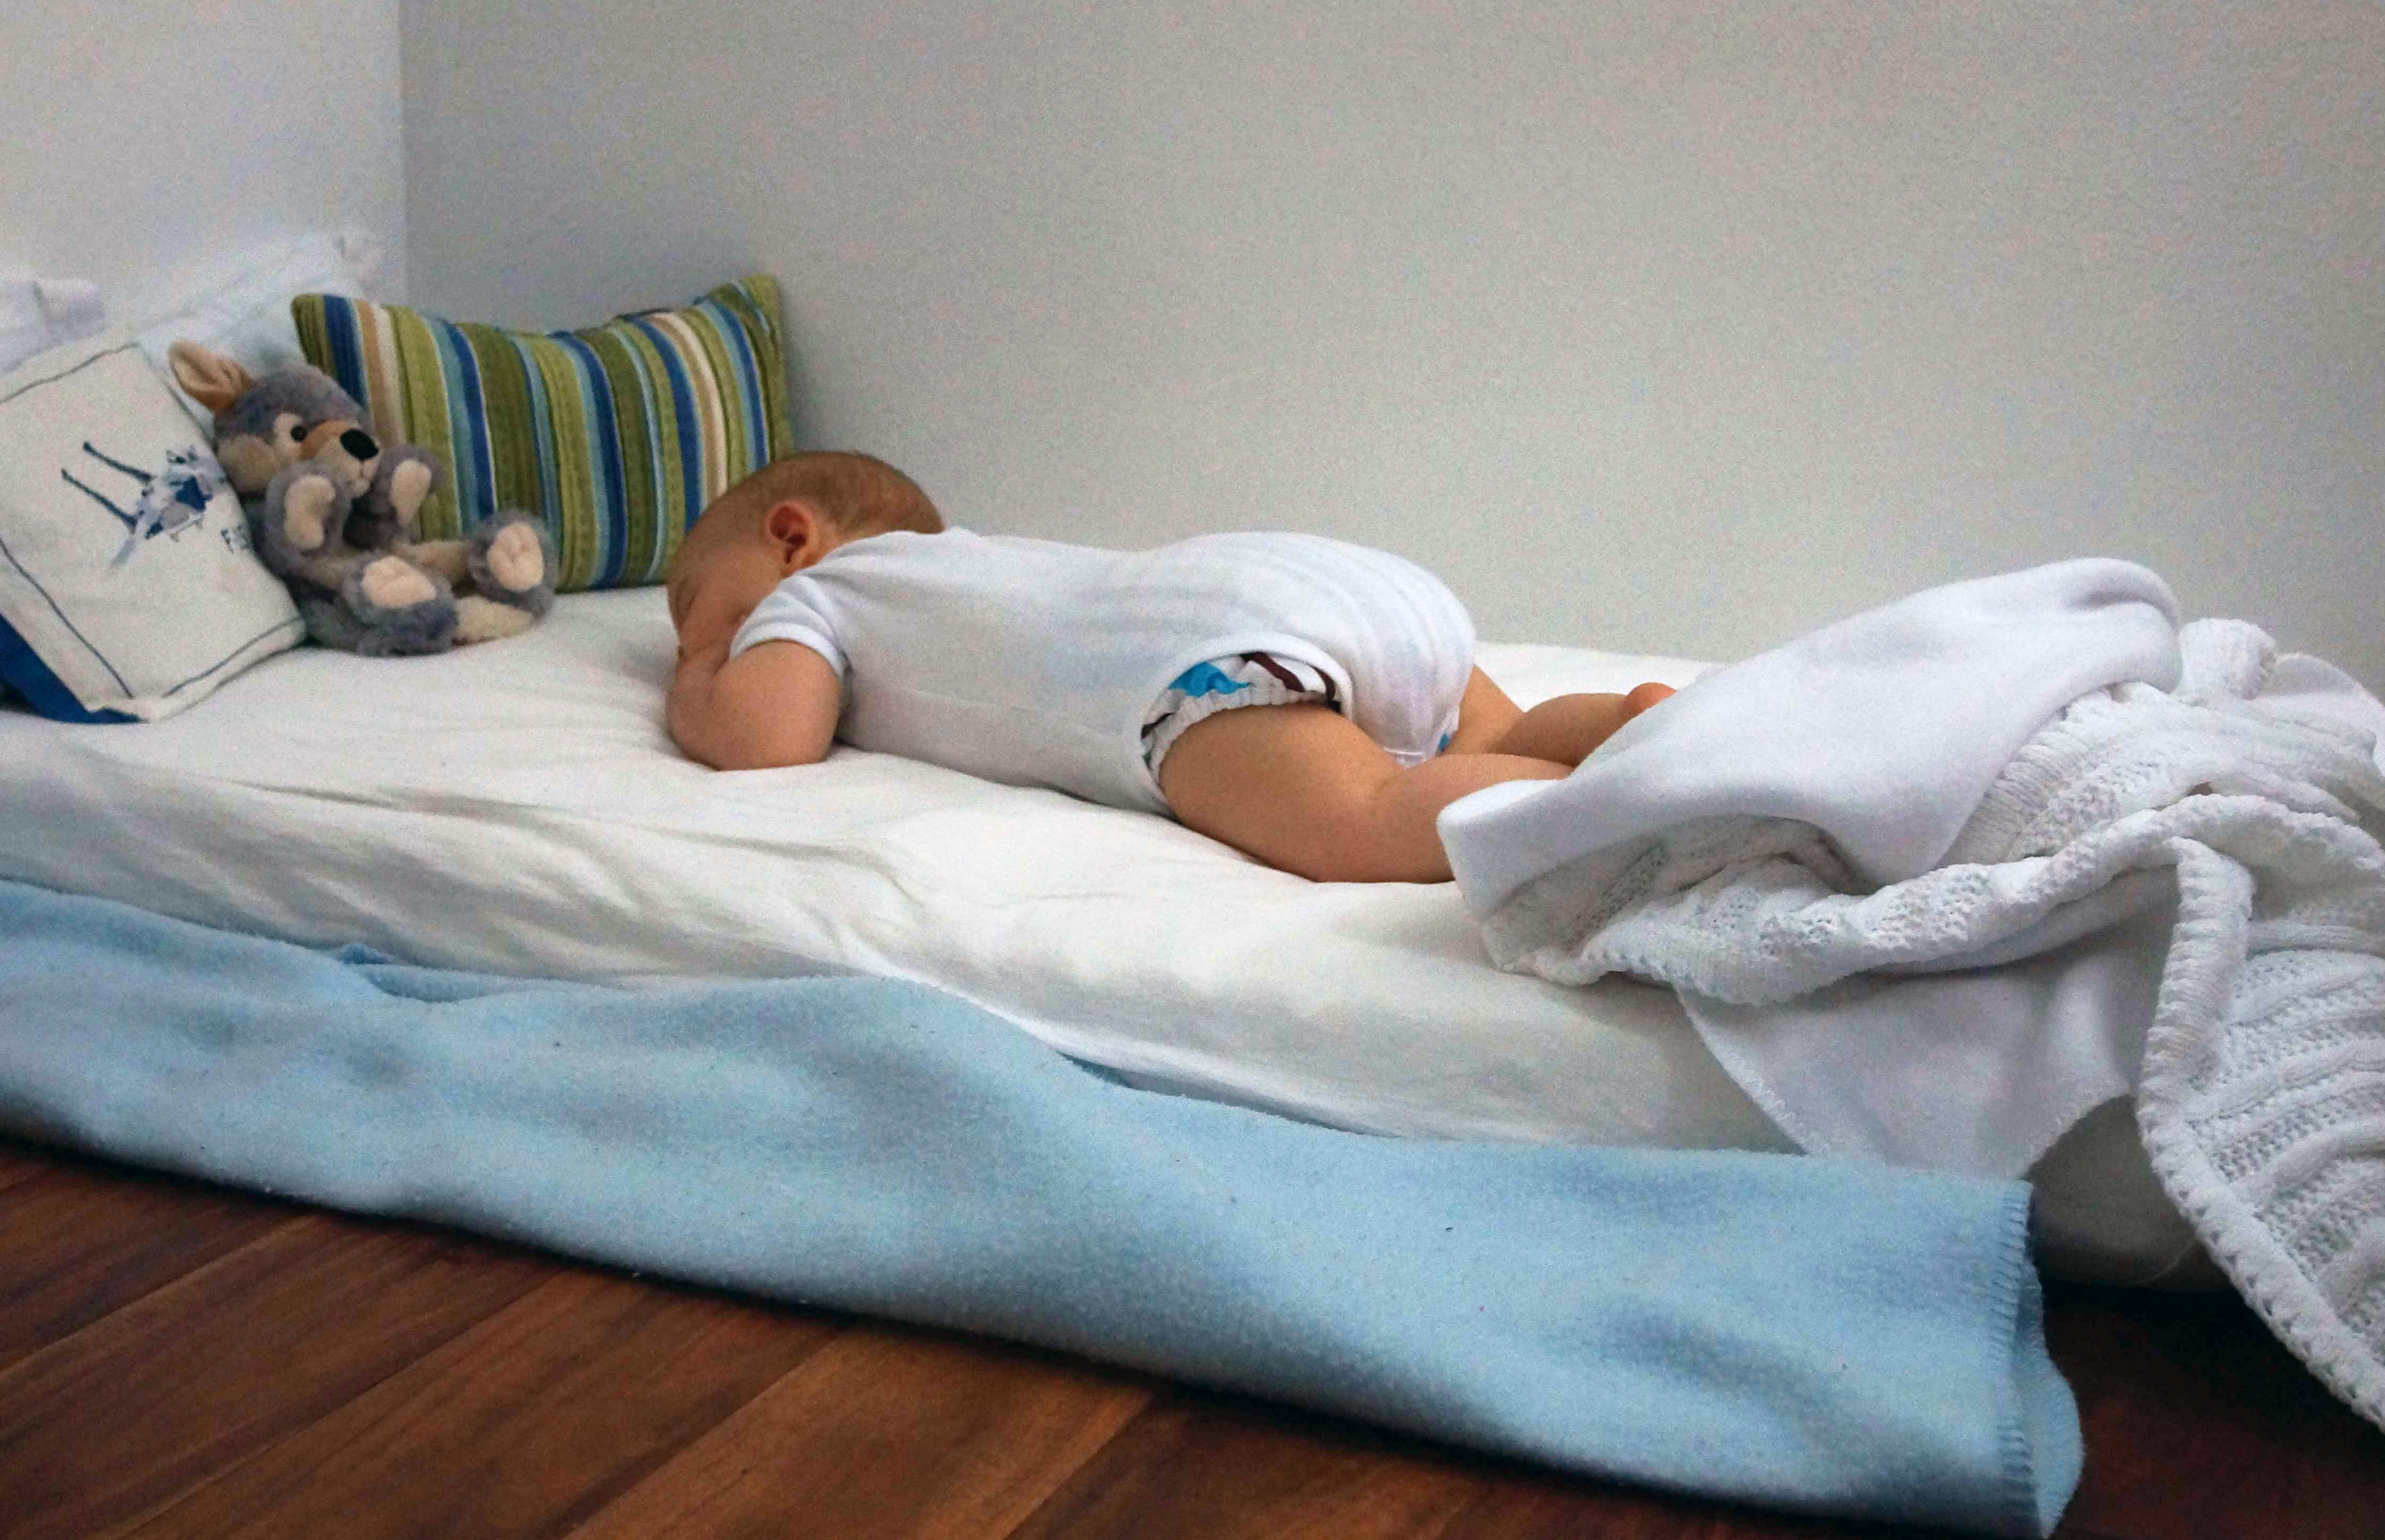 How to Babyproof Your Platform Bed - Platform Beds Online Blog